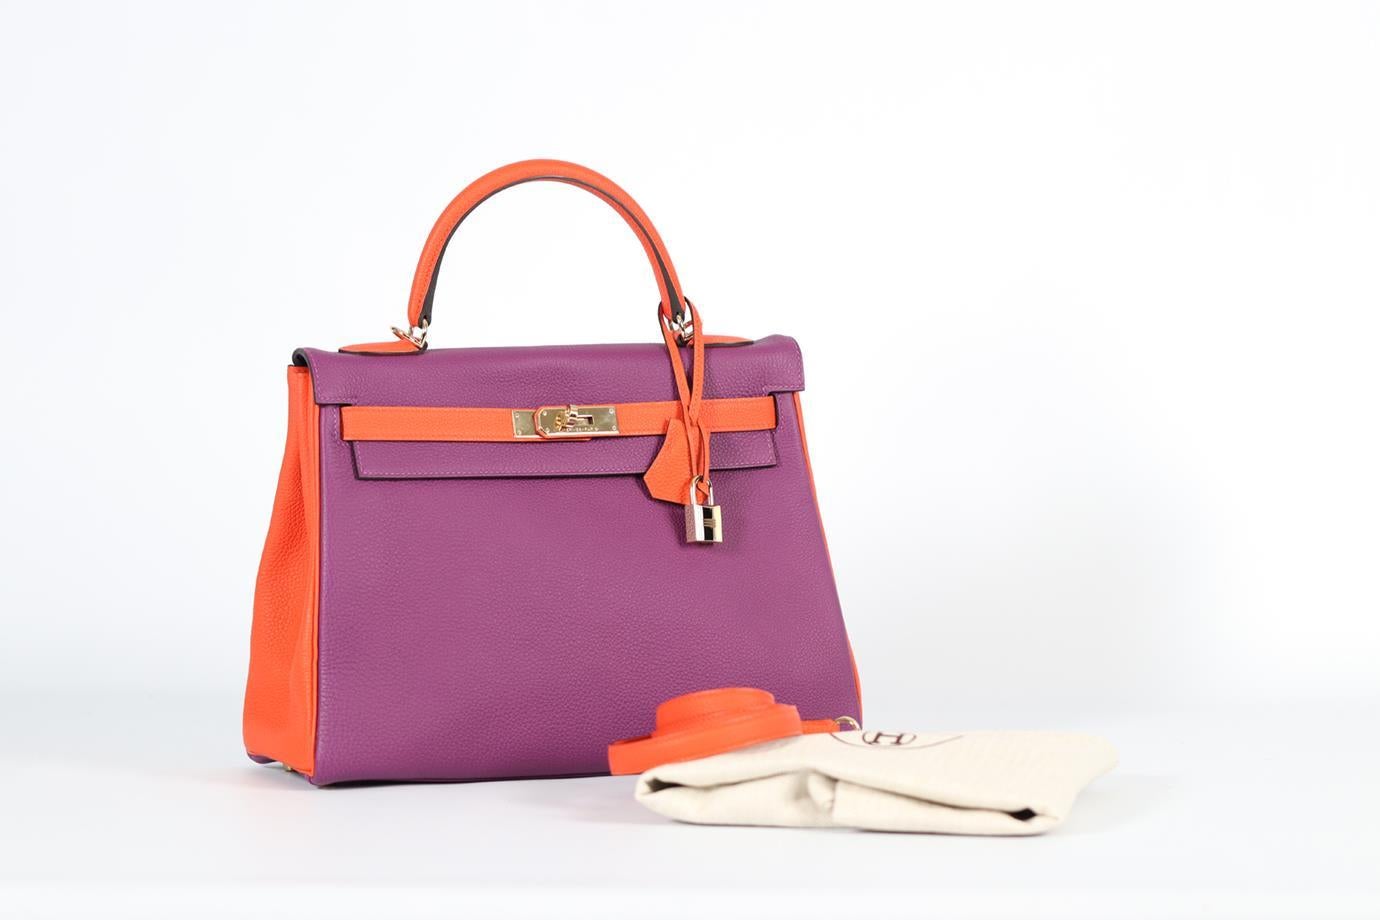 Hermès 2019 Hss Kelly 32cm Togo Leather Bag For Sale 8